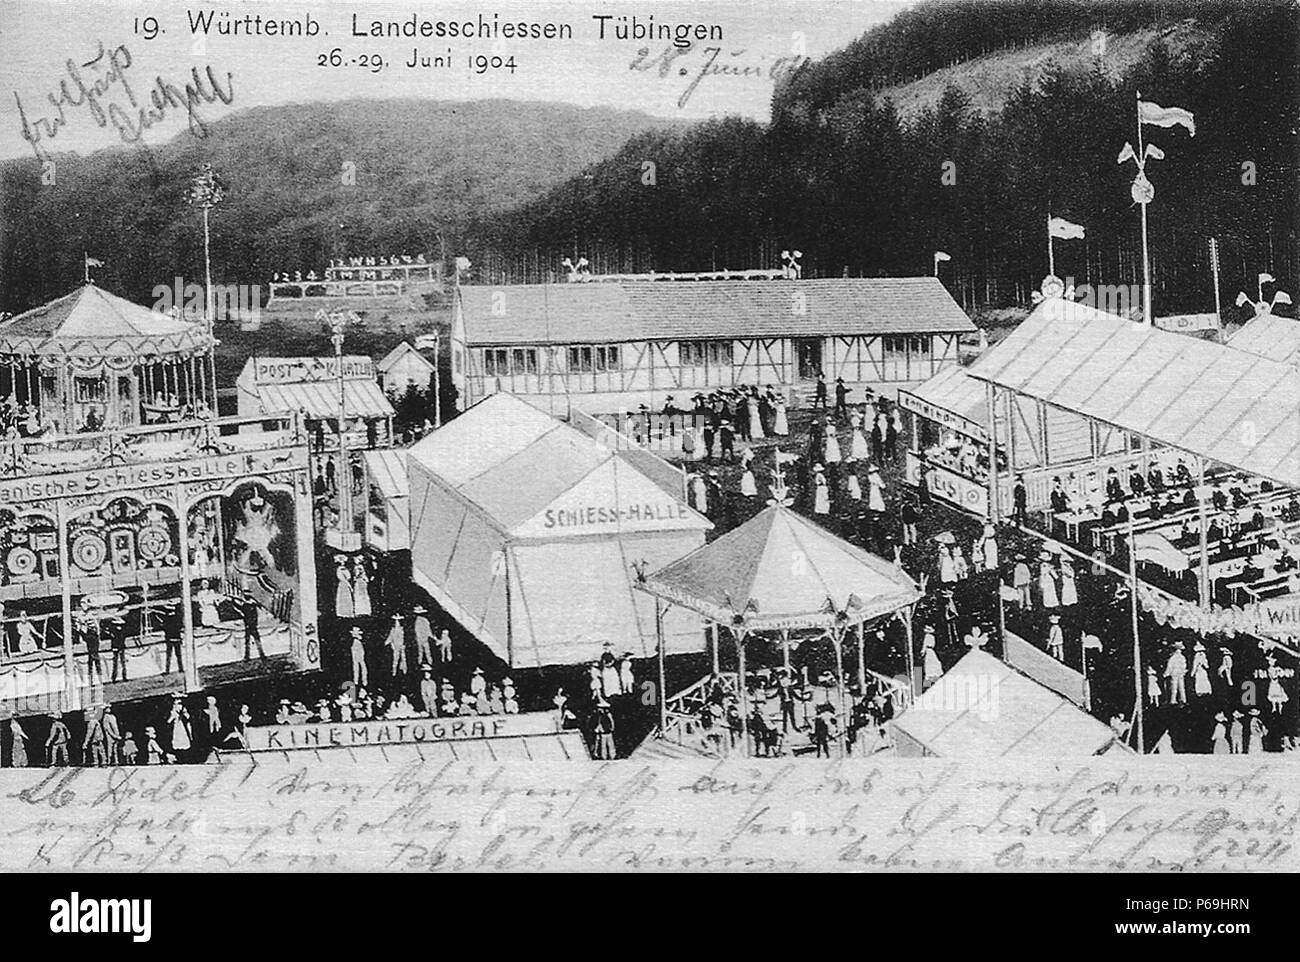 19. Württembergisches Landesschießen Tübingen 26.–29.6.1904 (AK Gebr. Metz 1904 TPk205). Stock Photo